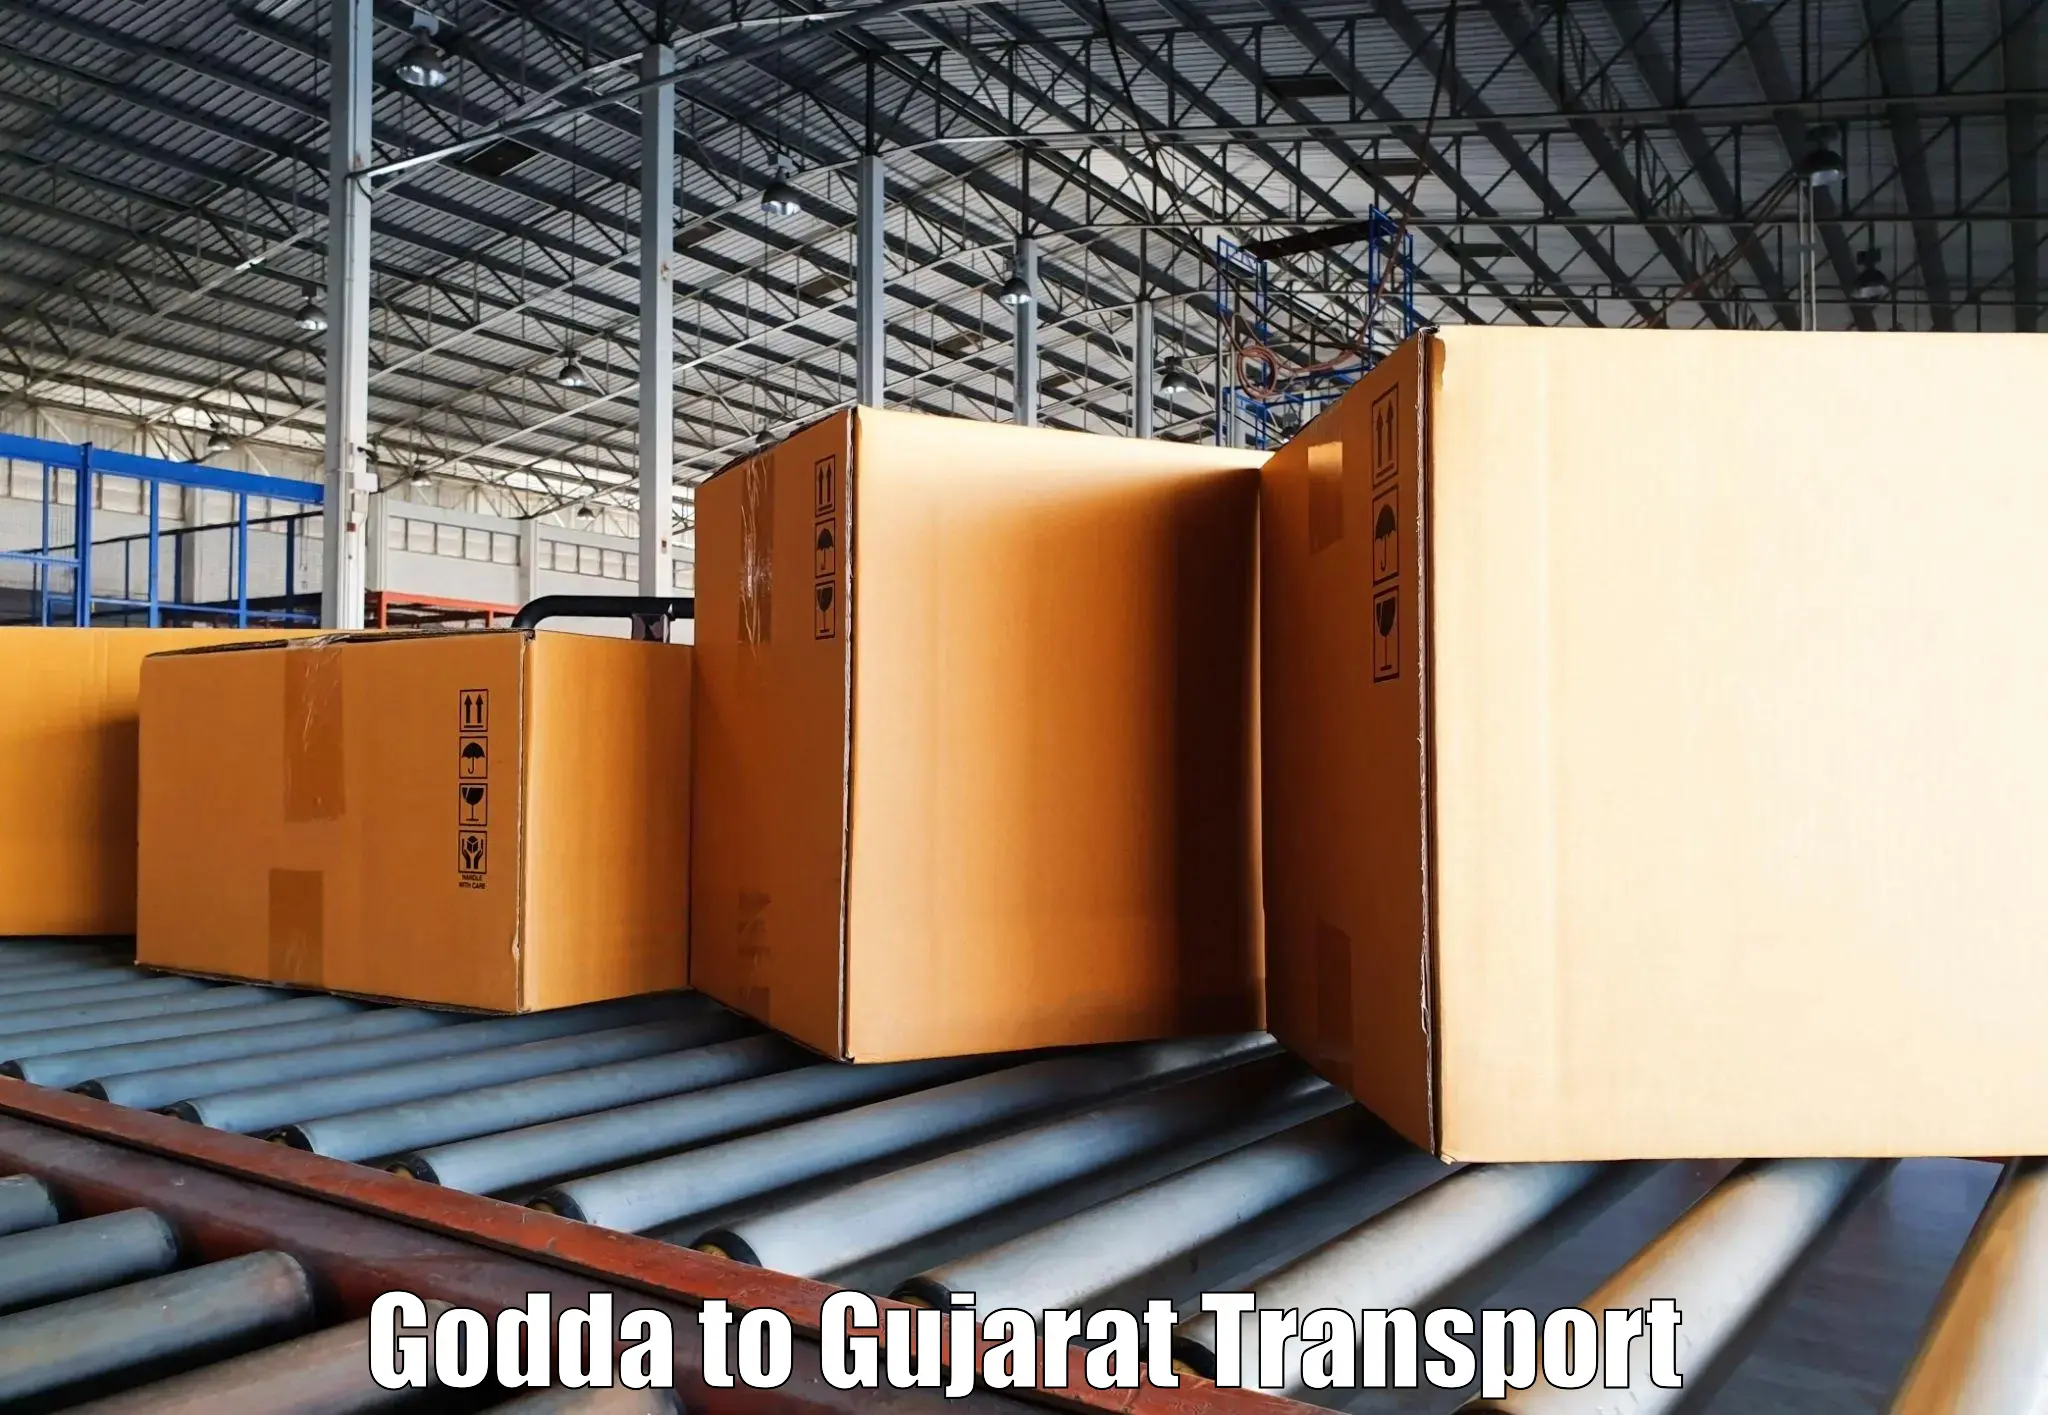 Nearest transport service Godda to Upleta